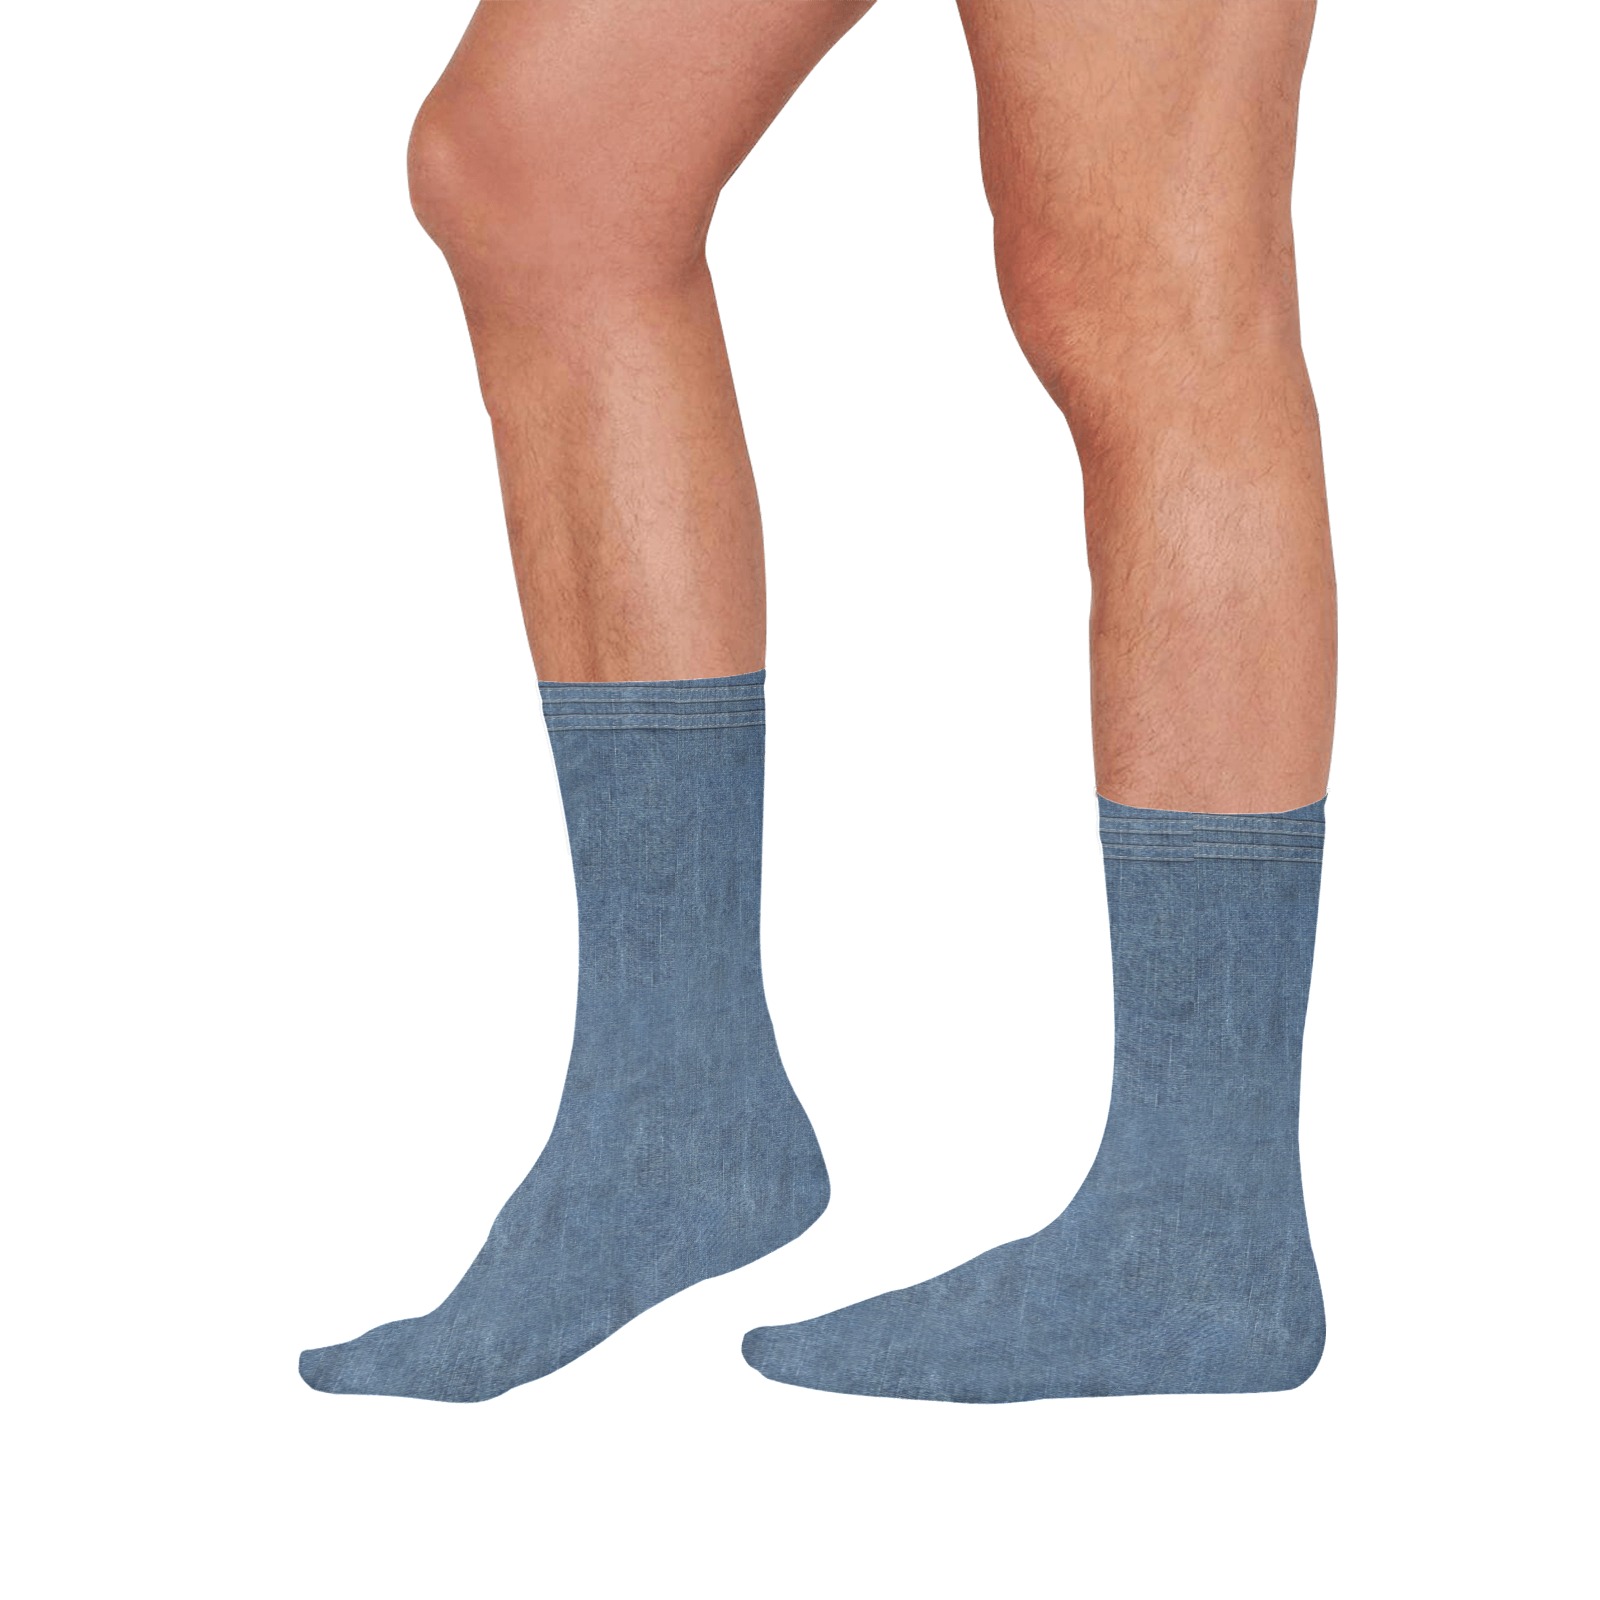 Denim Look All Over Print Socks for Men